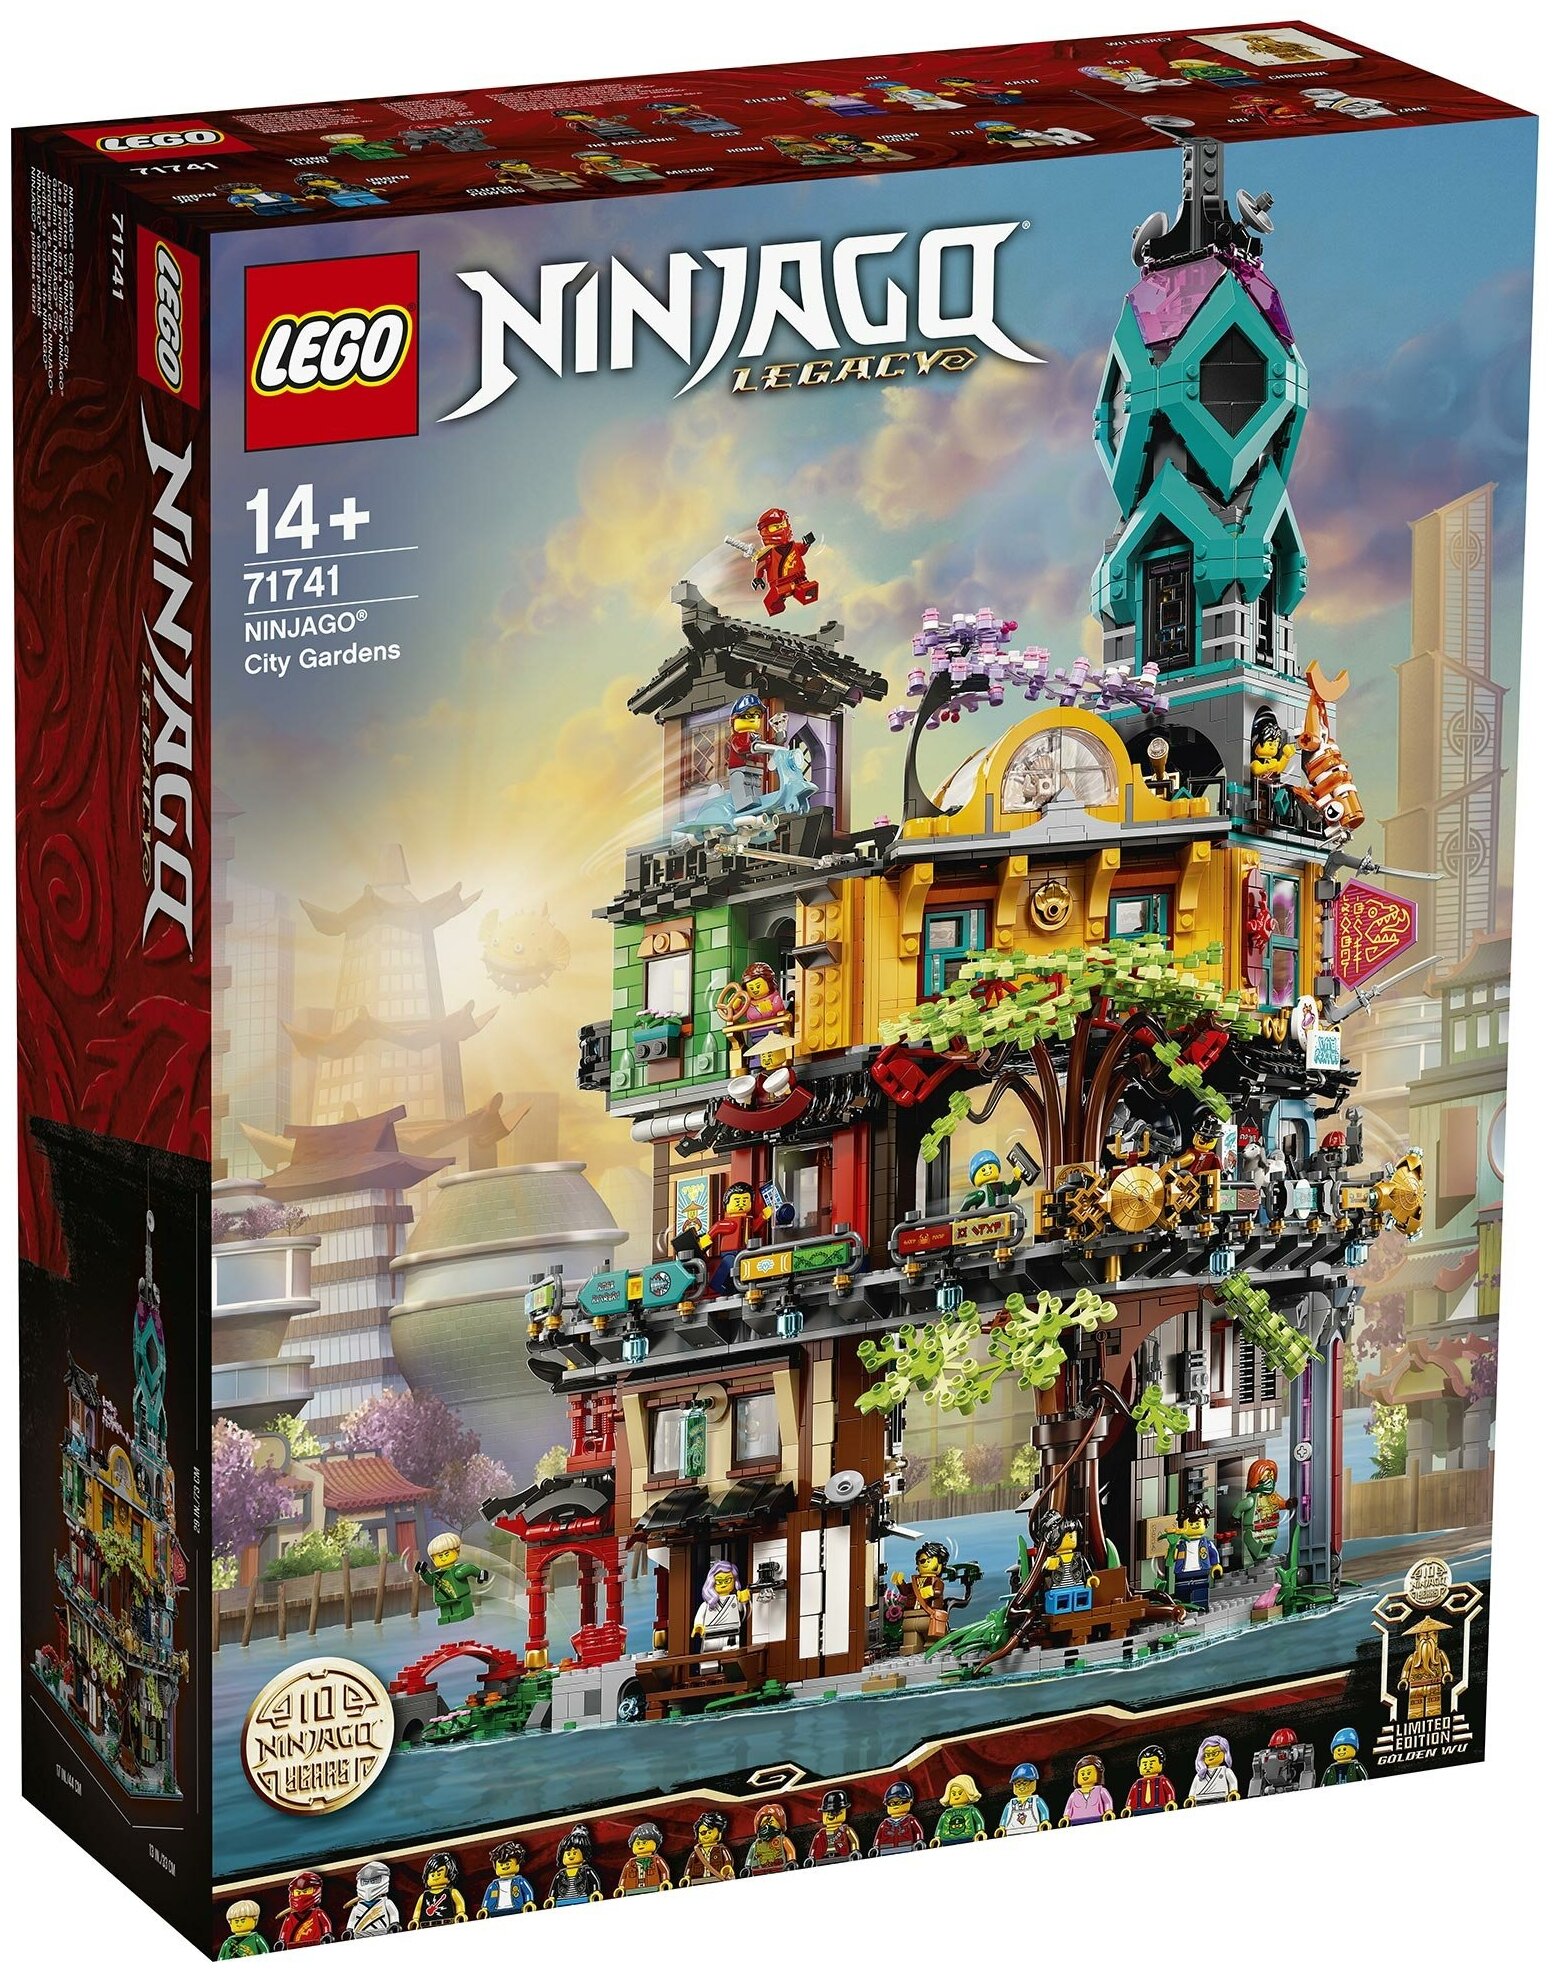 Конструктор LEGO NINJAGO City Gardens, деталей: 5685 (71741)